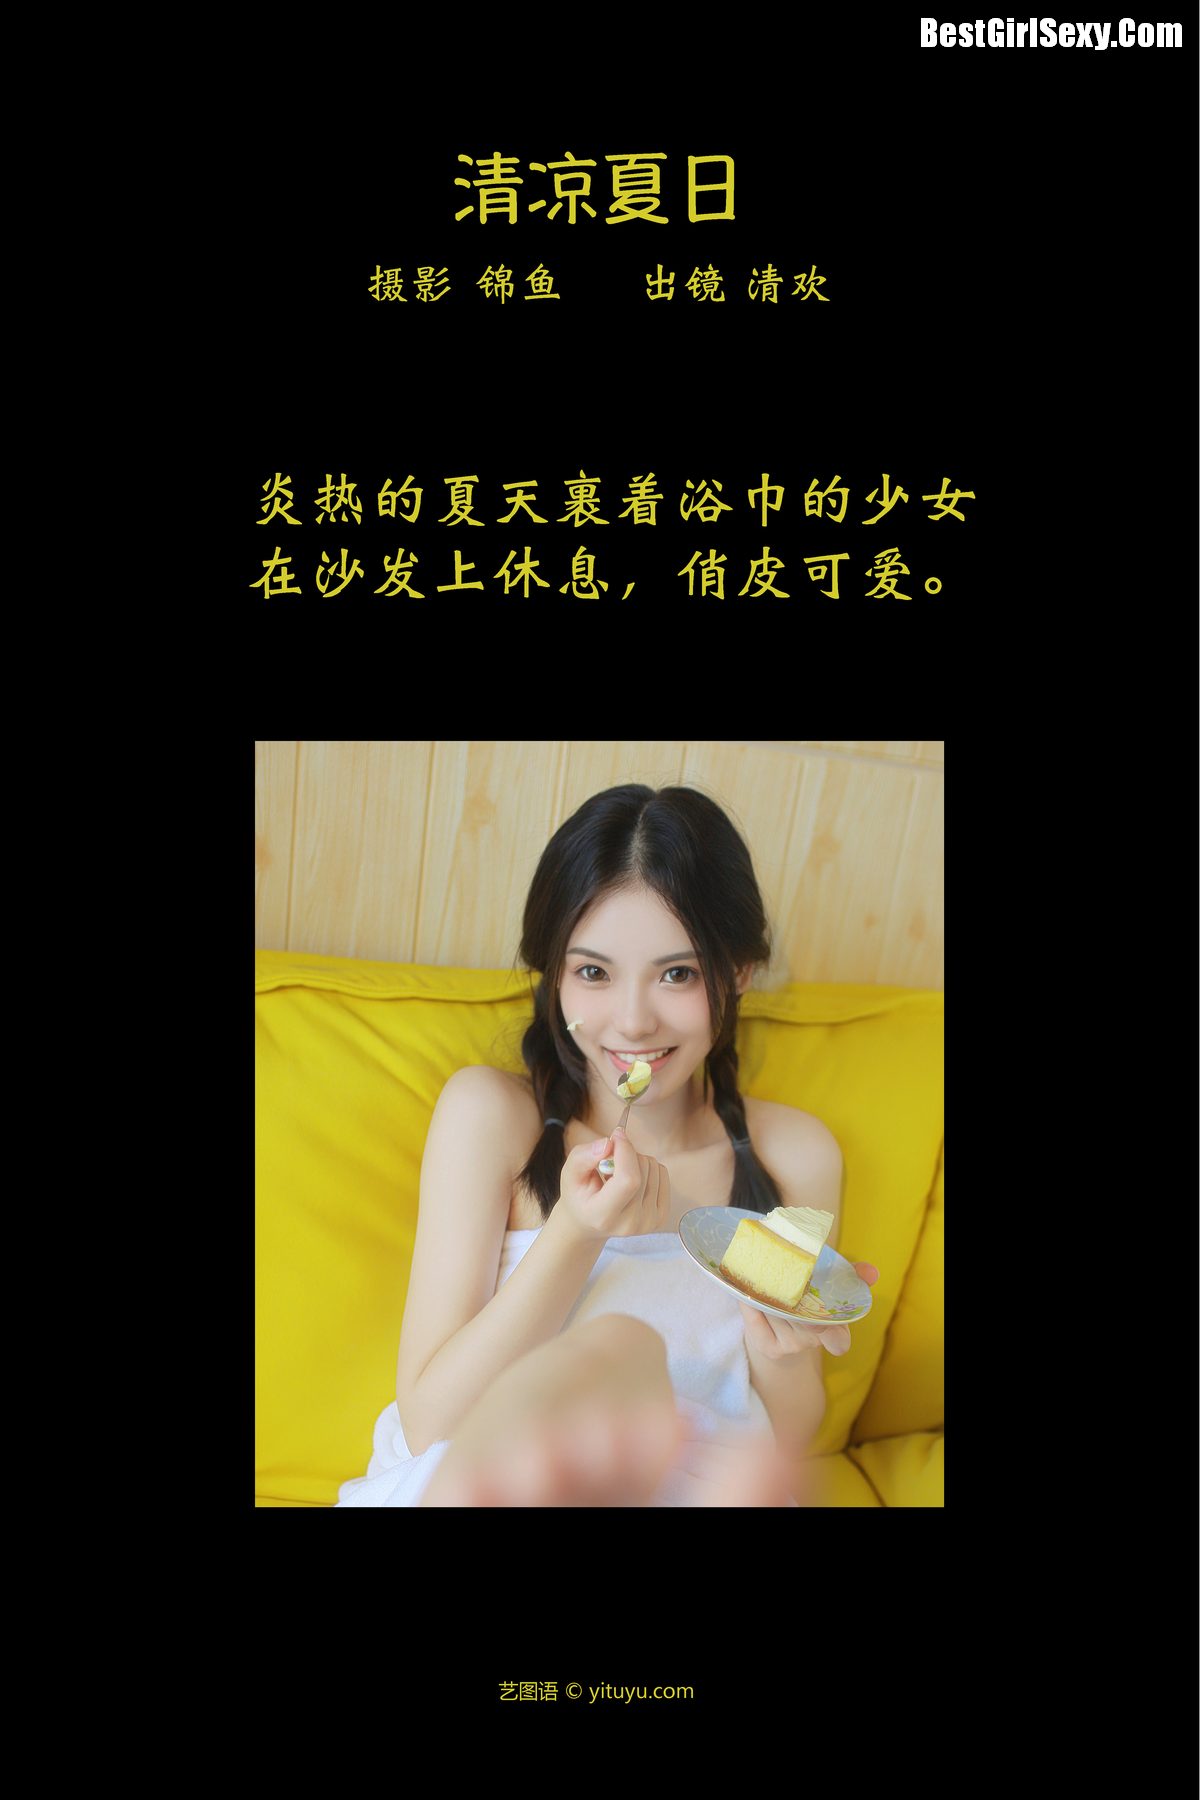 YiTuYu艺图语 Vol 3970 Qing Huan Er 0001 6216635501.jpg